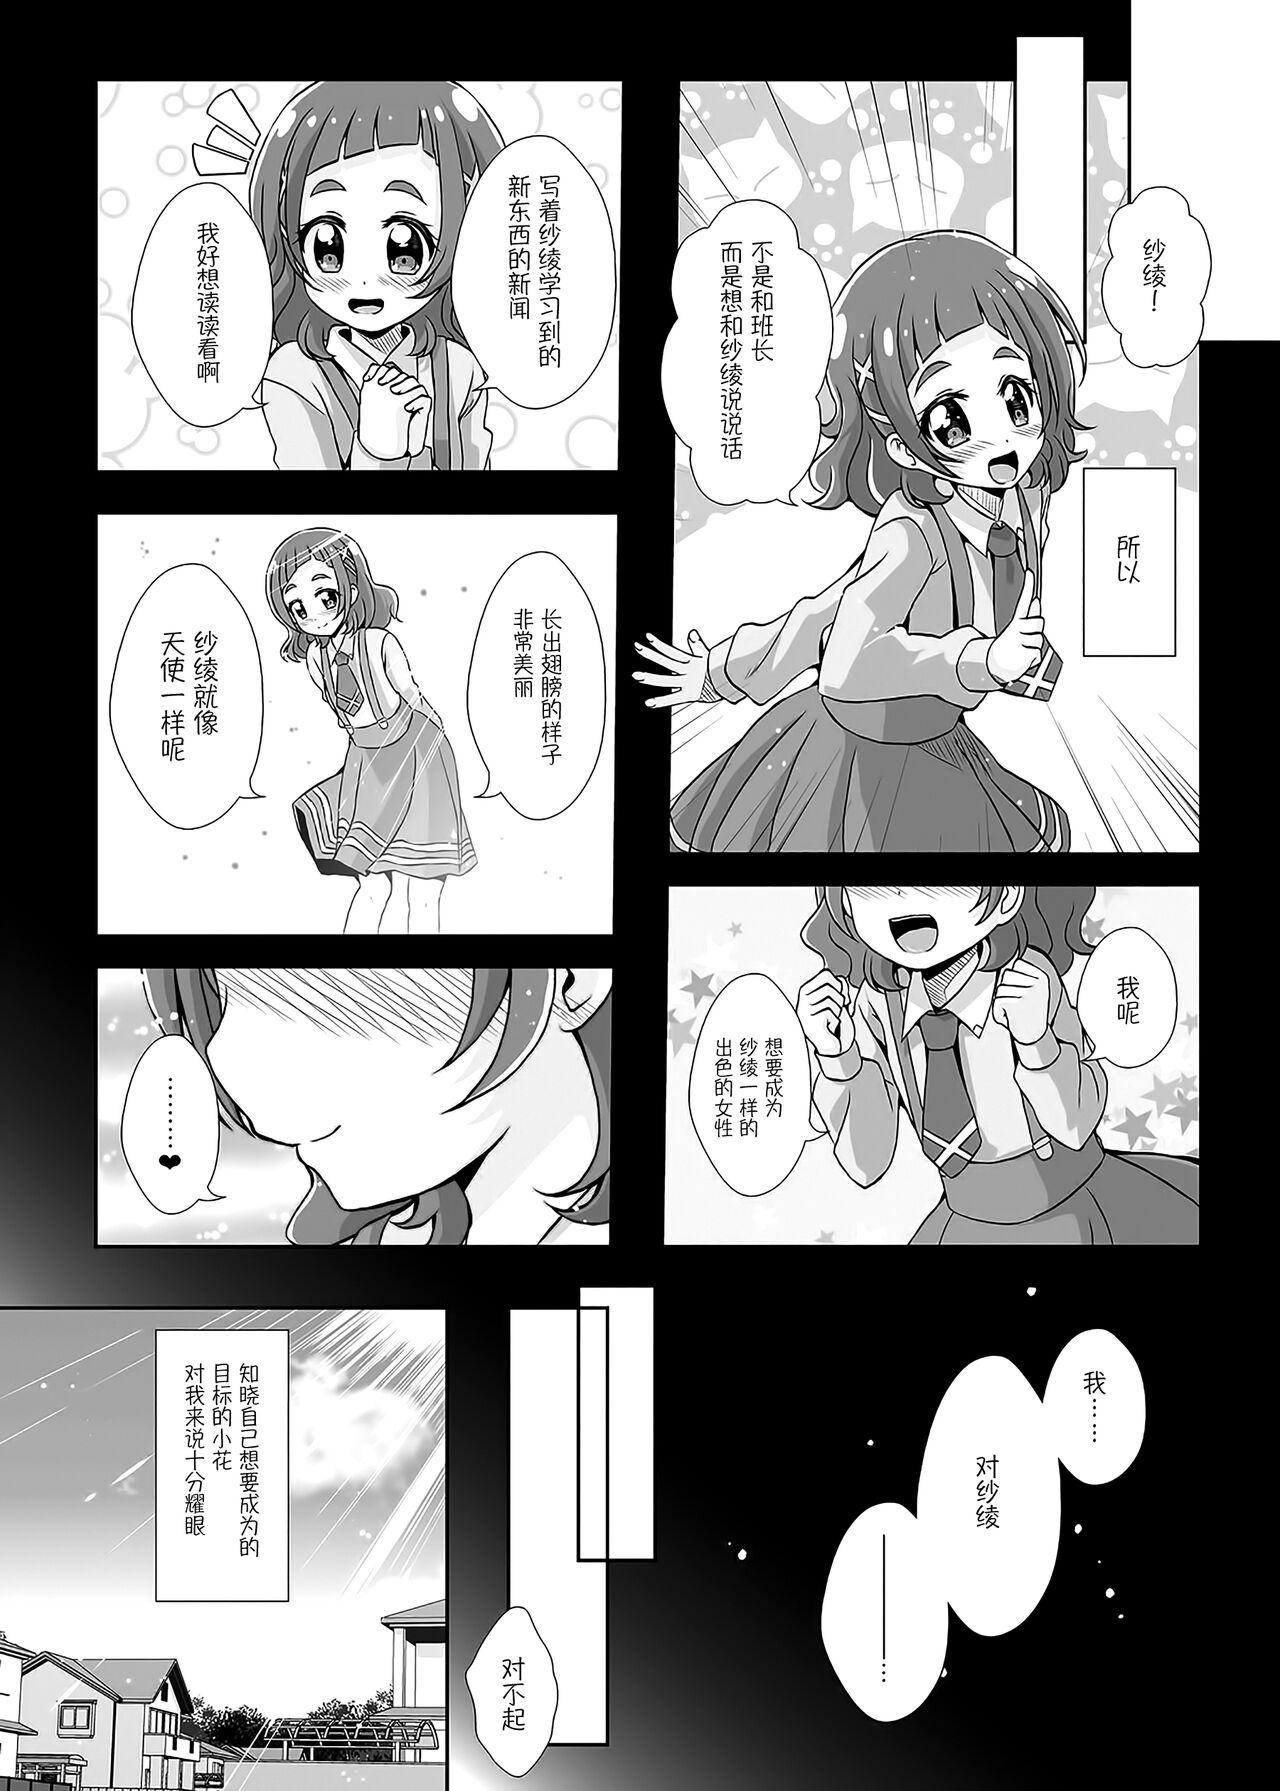 Picked Up Watashi no Kokoro no Naka no Hana - Hana in my heart - Hugtto precure Real Amatuer Porn - Page 4